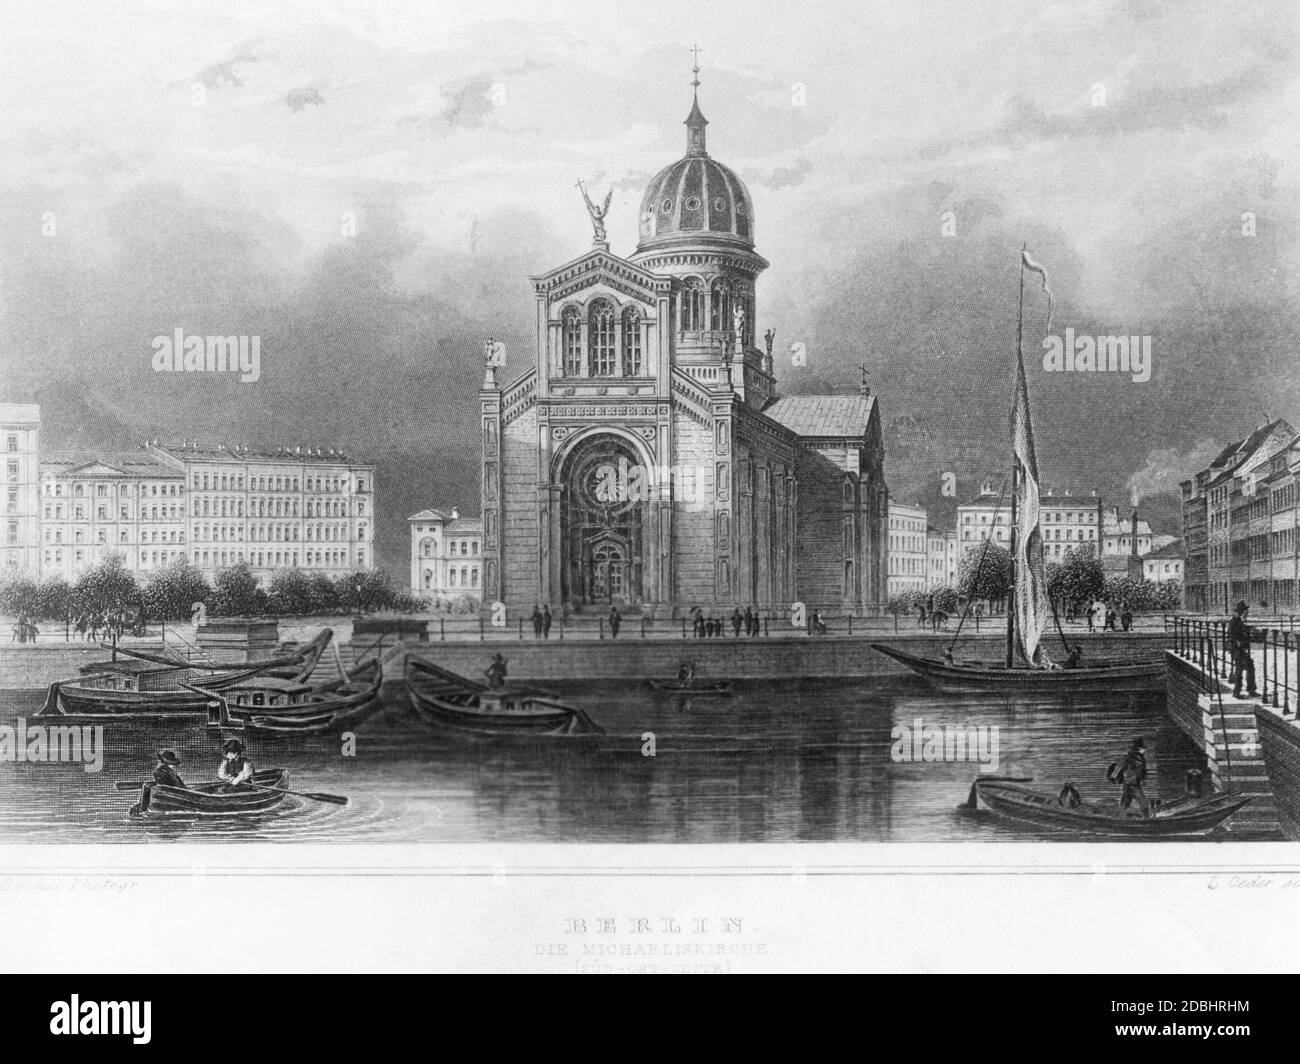 Der Stich von 1854 zeigt die St. Michael Kirche am Michaelkirchplatz in Berlin-Mitte. Davor befinden sich Boote in Engelbecken. Stockfoto